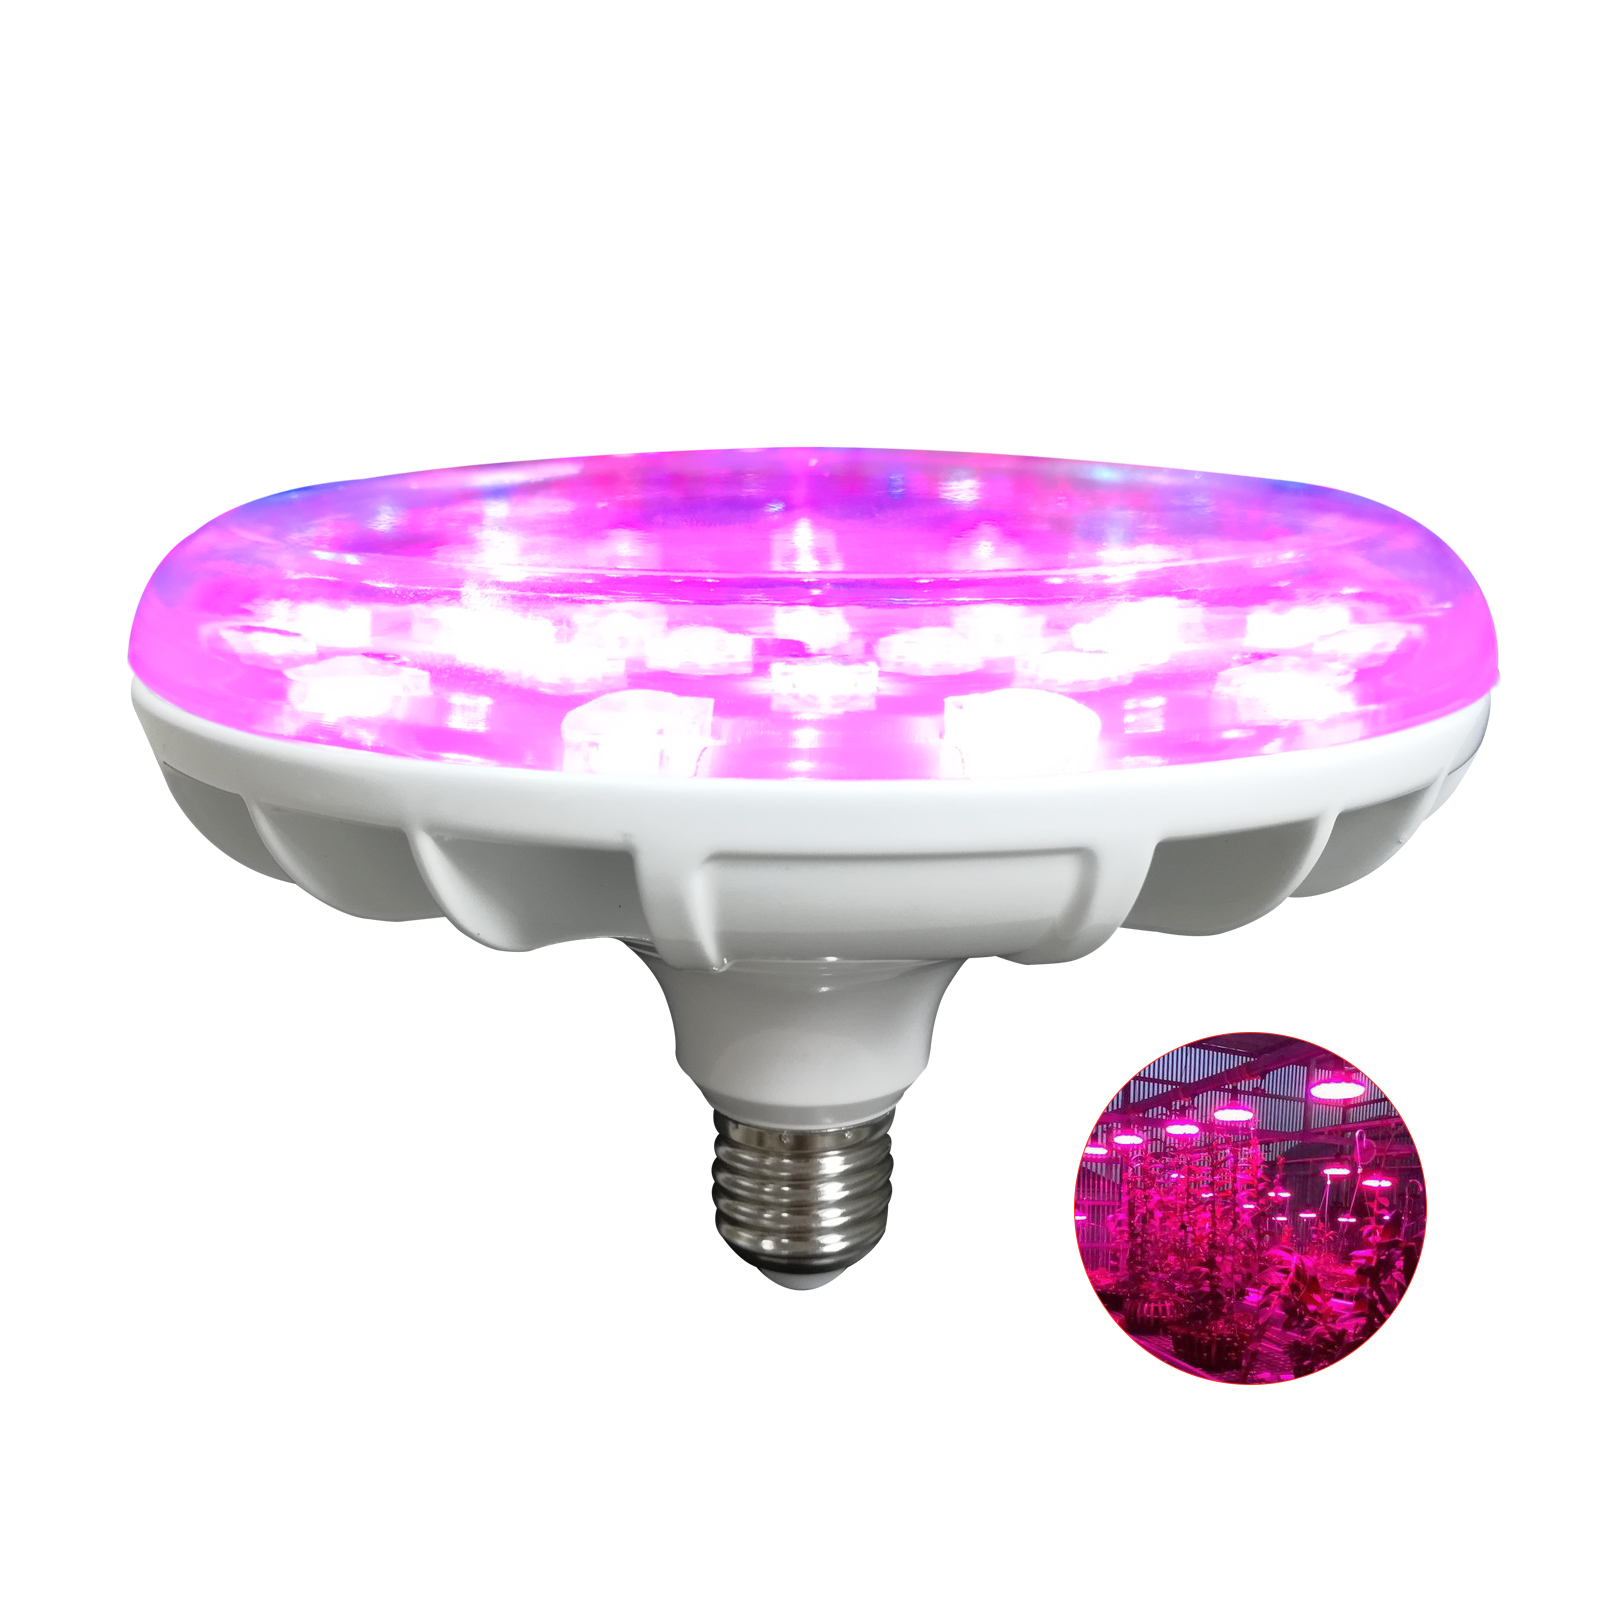 Liweida hot selling 20W led UFO lighting